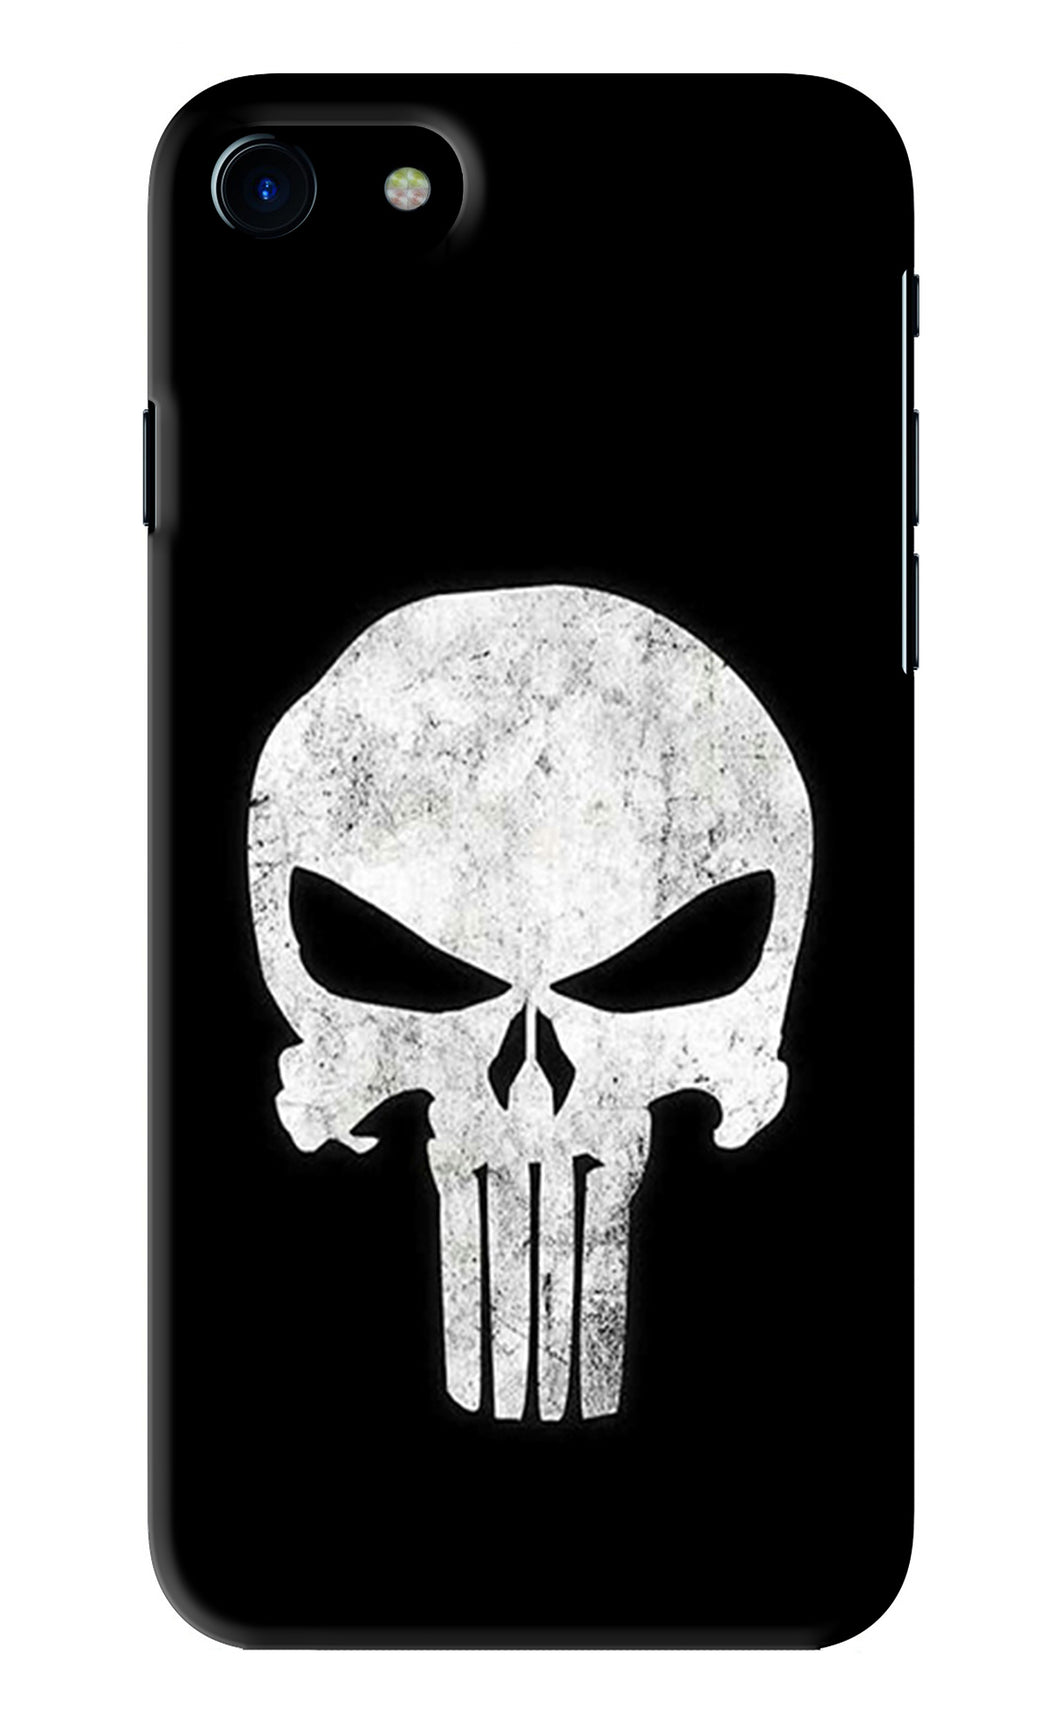 Punisher Skull iPhone 7 Back Skin Wrap